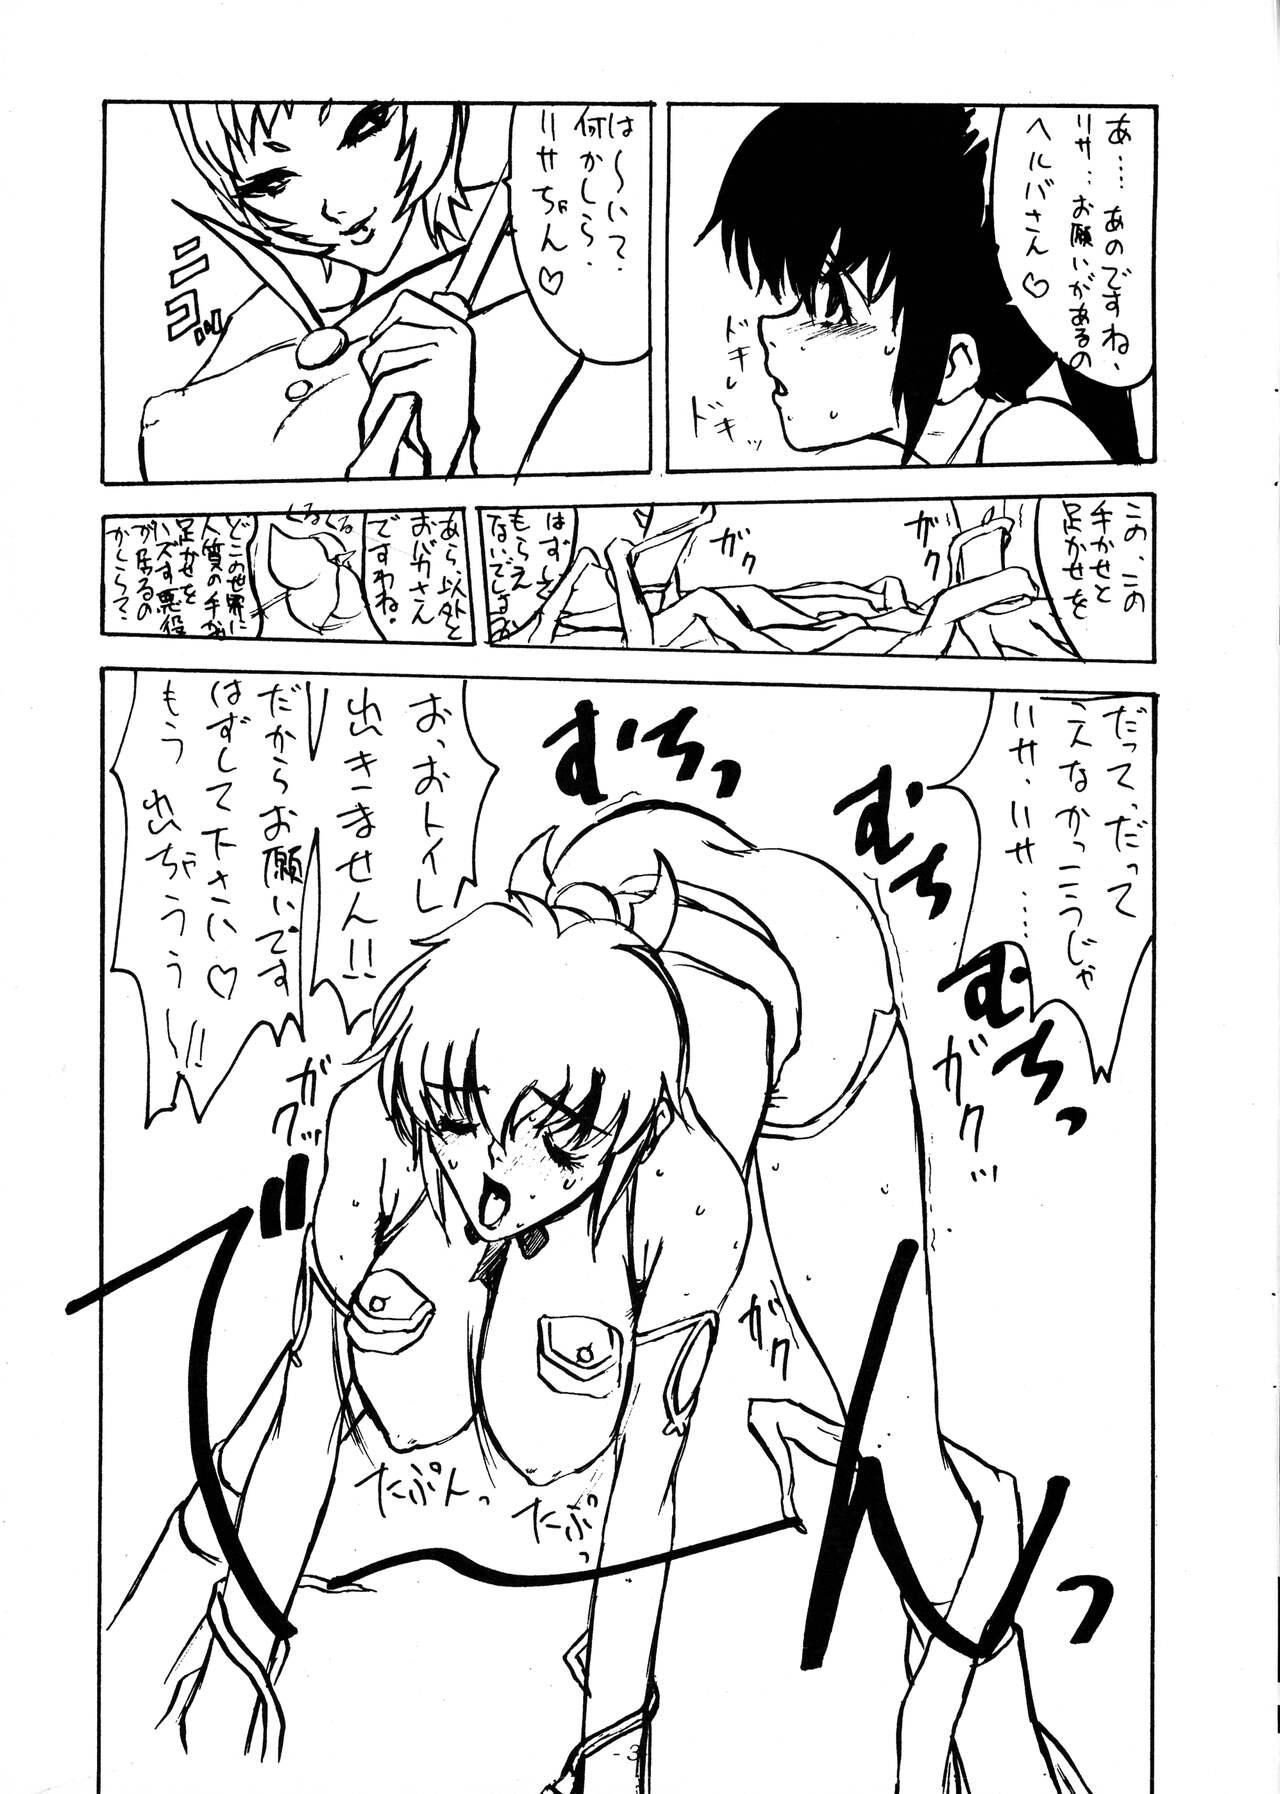 This Mieru? Kono watashi no koumon ni iyarashiku kui komu FUNDOSHI Sixtynine - Page 5